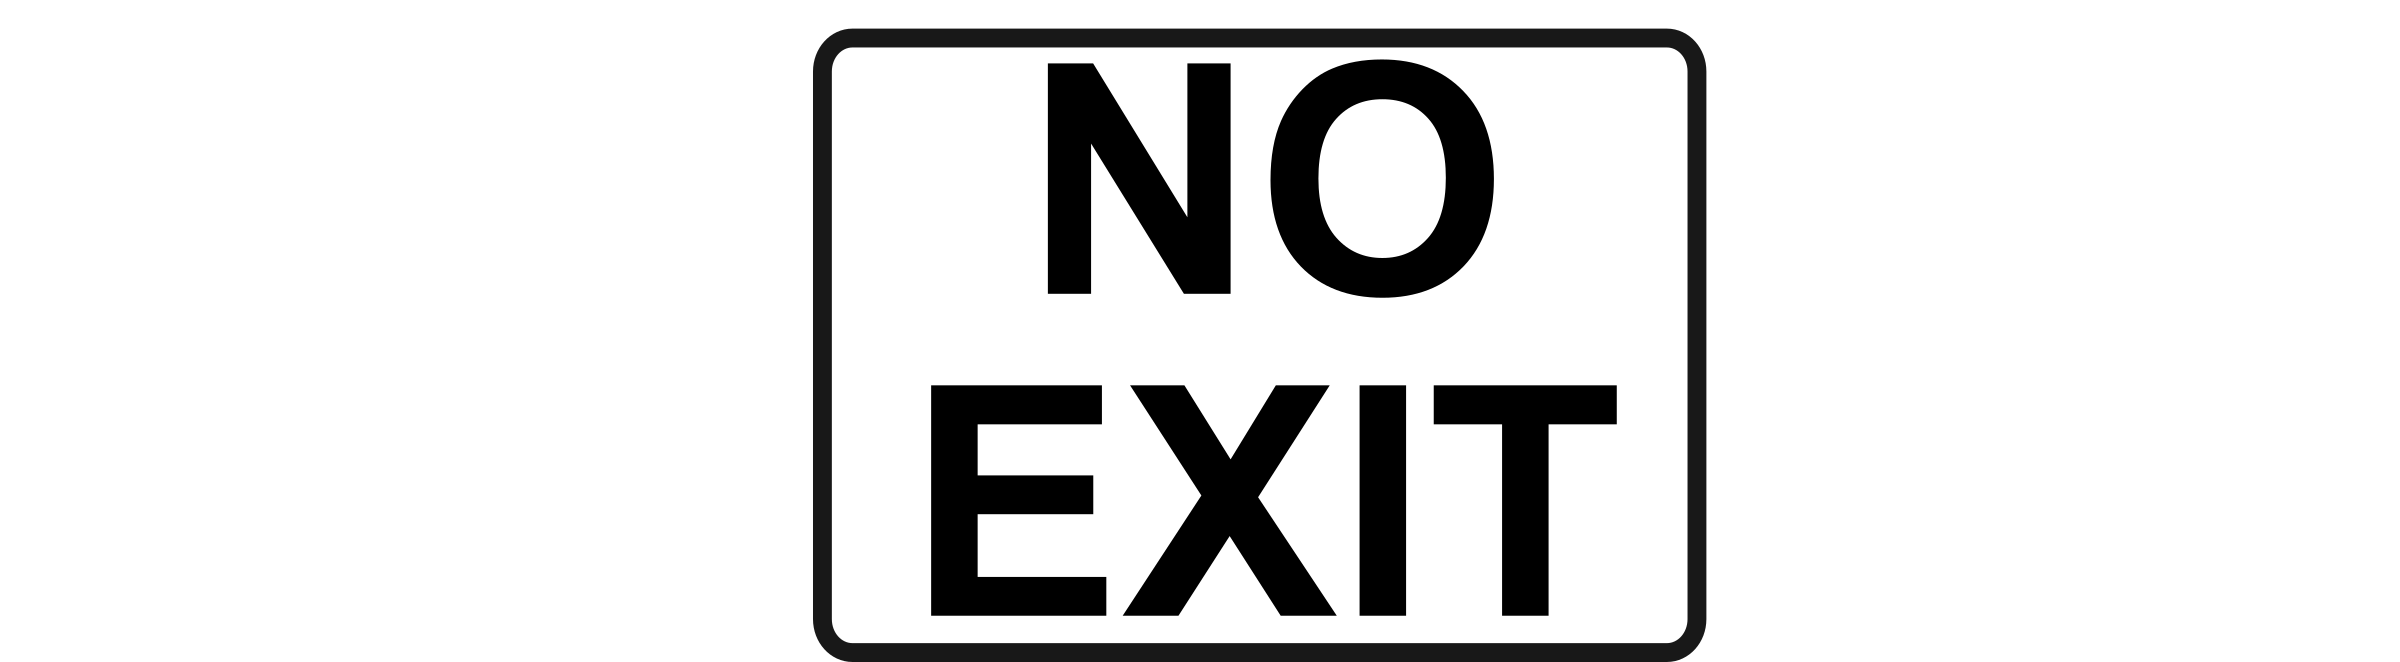 No Exit Sign Clip Art